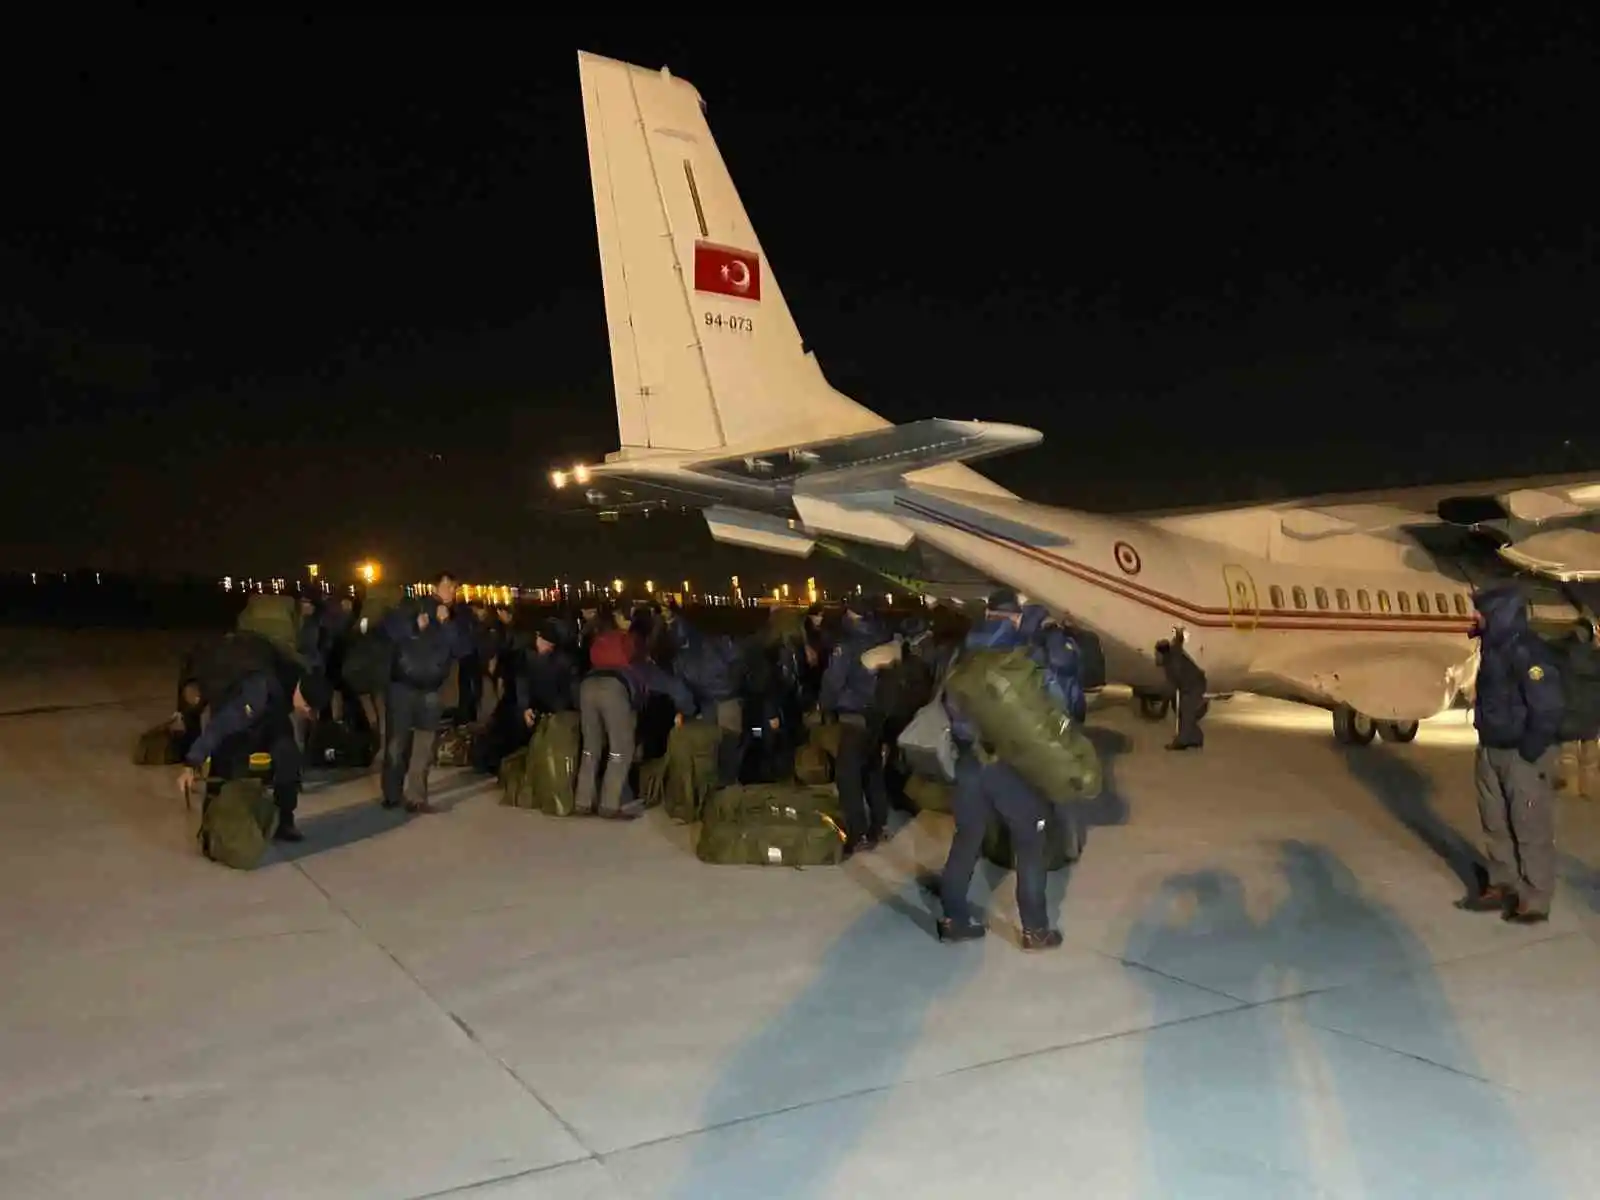 Enkaz çalışmalarına katılan Litvanyalı arama kurtarma ekibi İstanbul’a döndü
